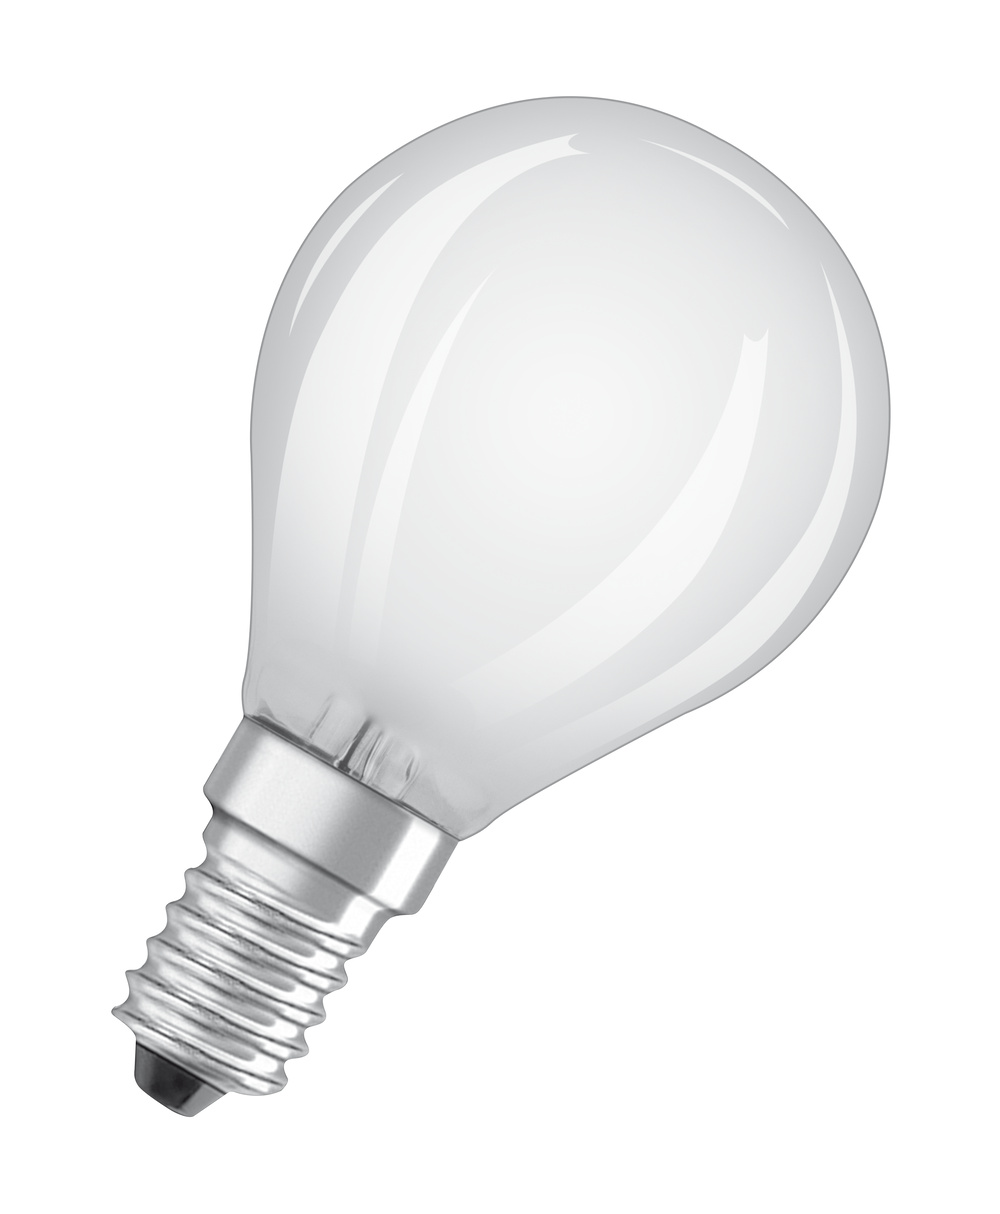 Ledvance LED lamp PARATHOM CLASSIC P 40 FR 4 W/2700 K E14 